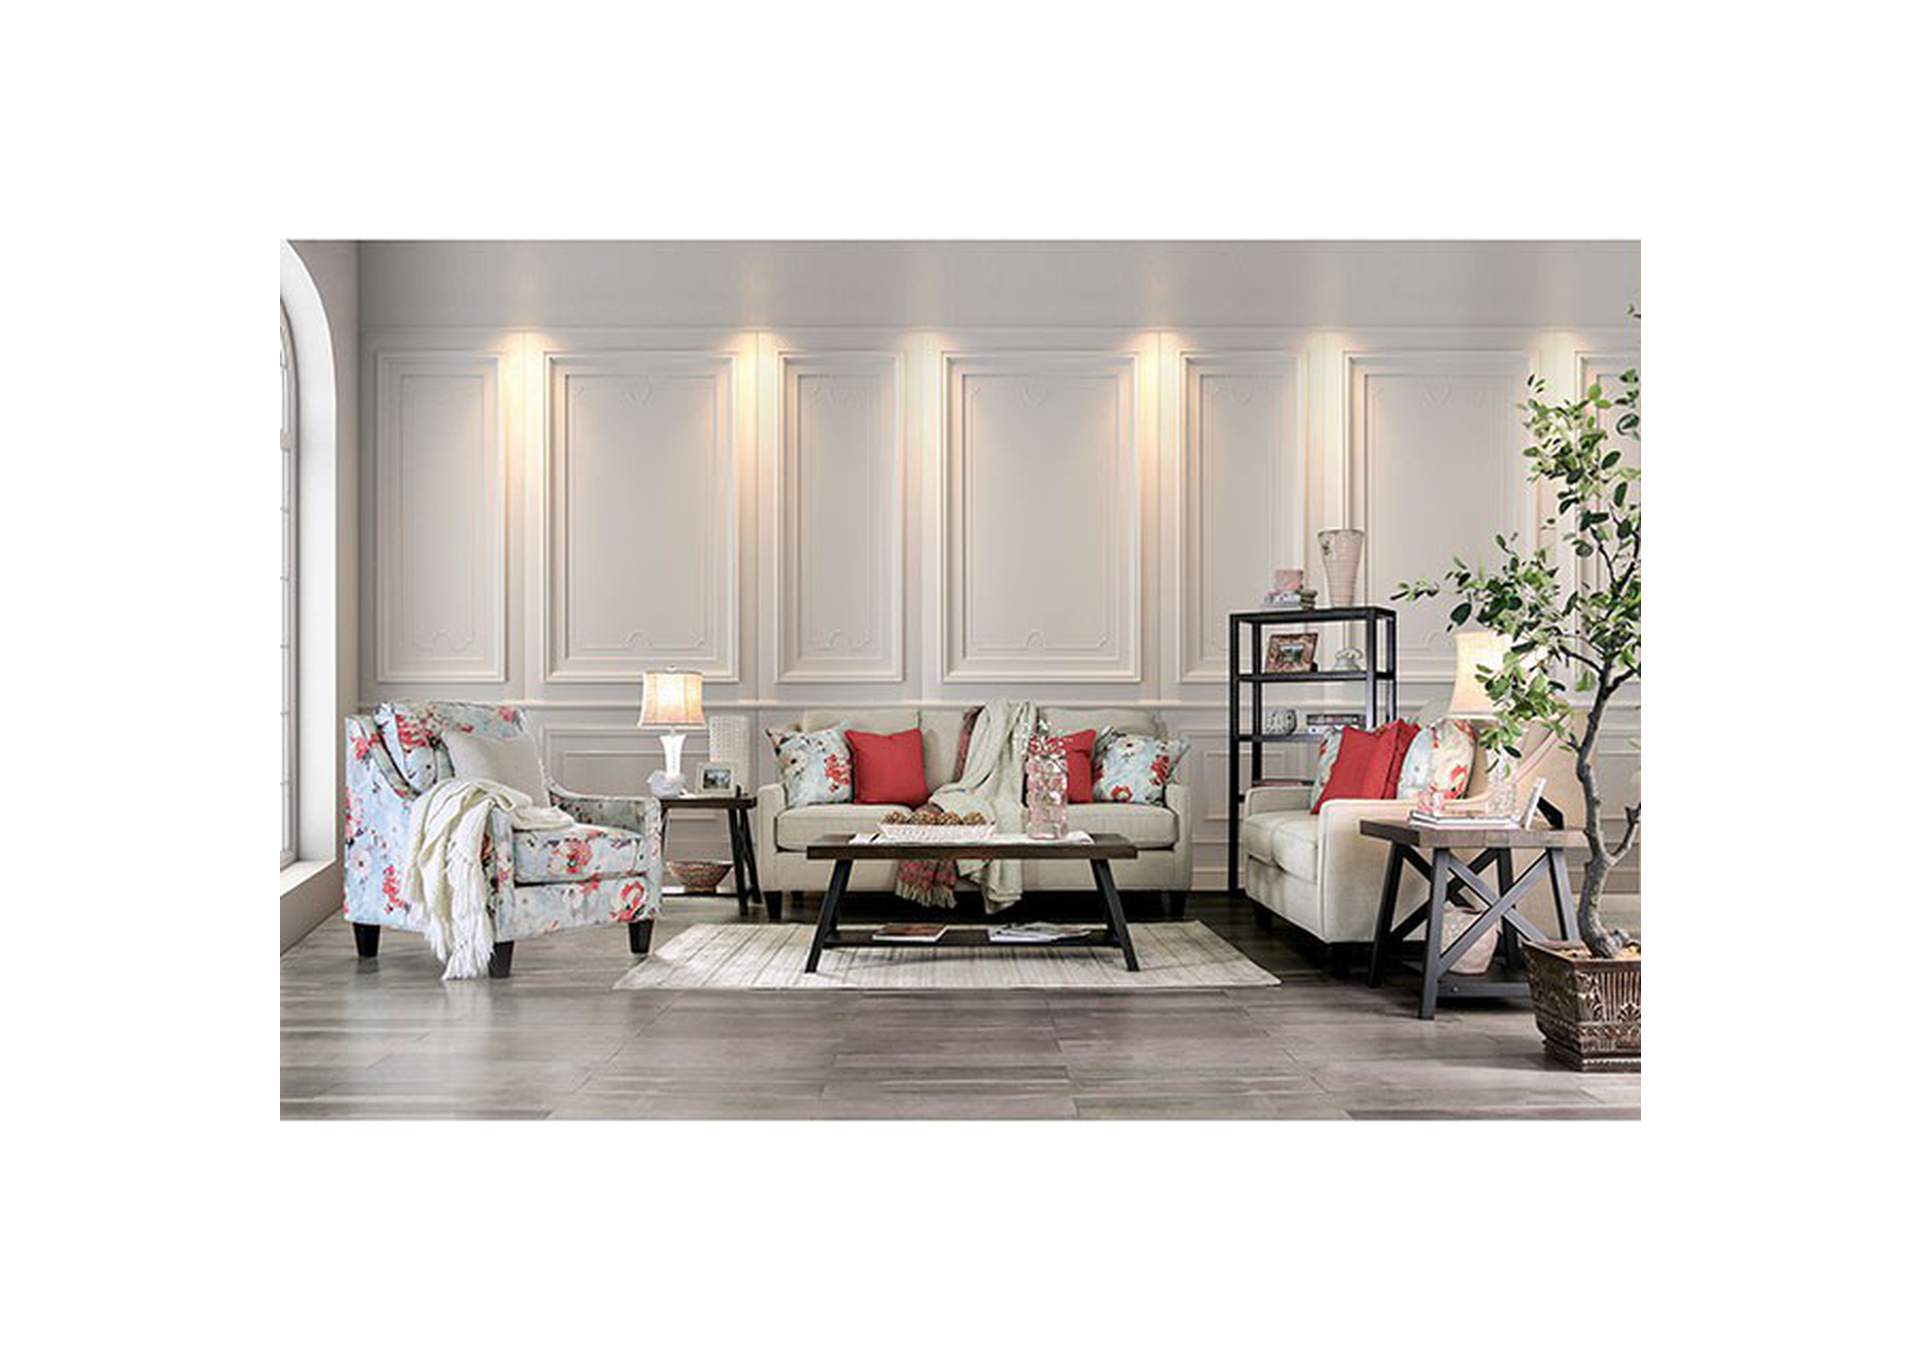 Nadene Ivory Sofa,Furniture of America